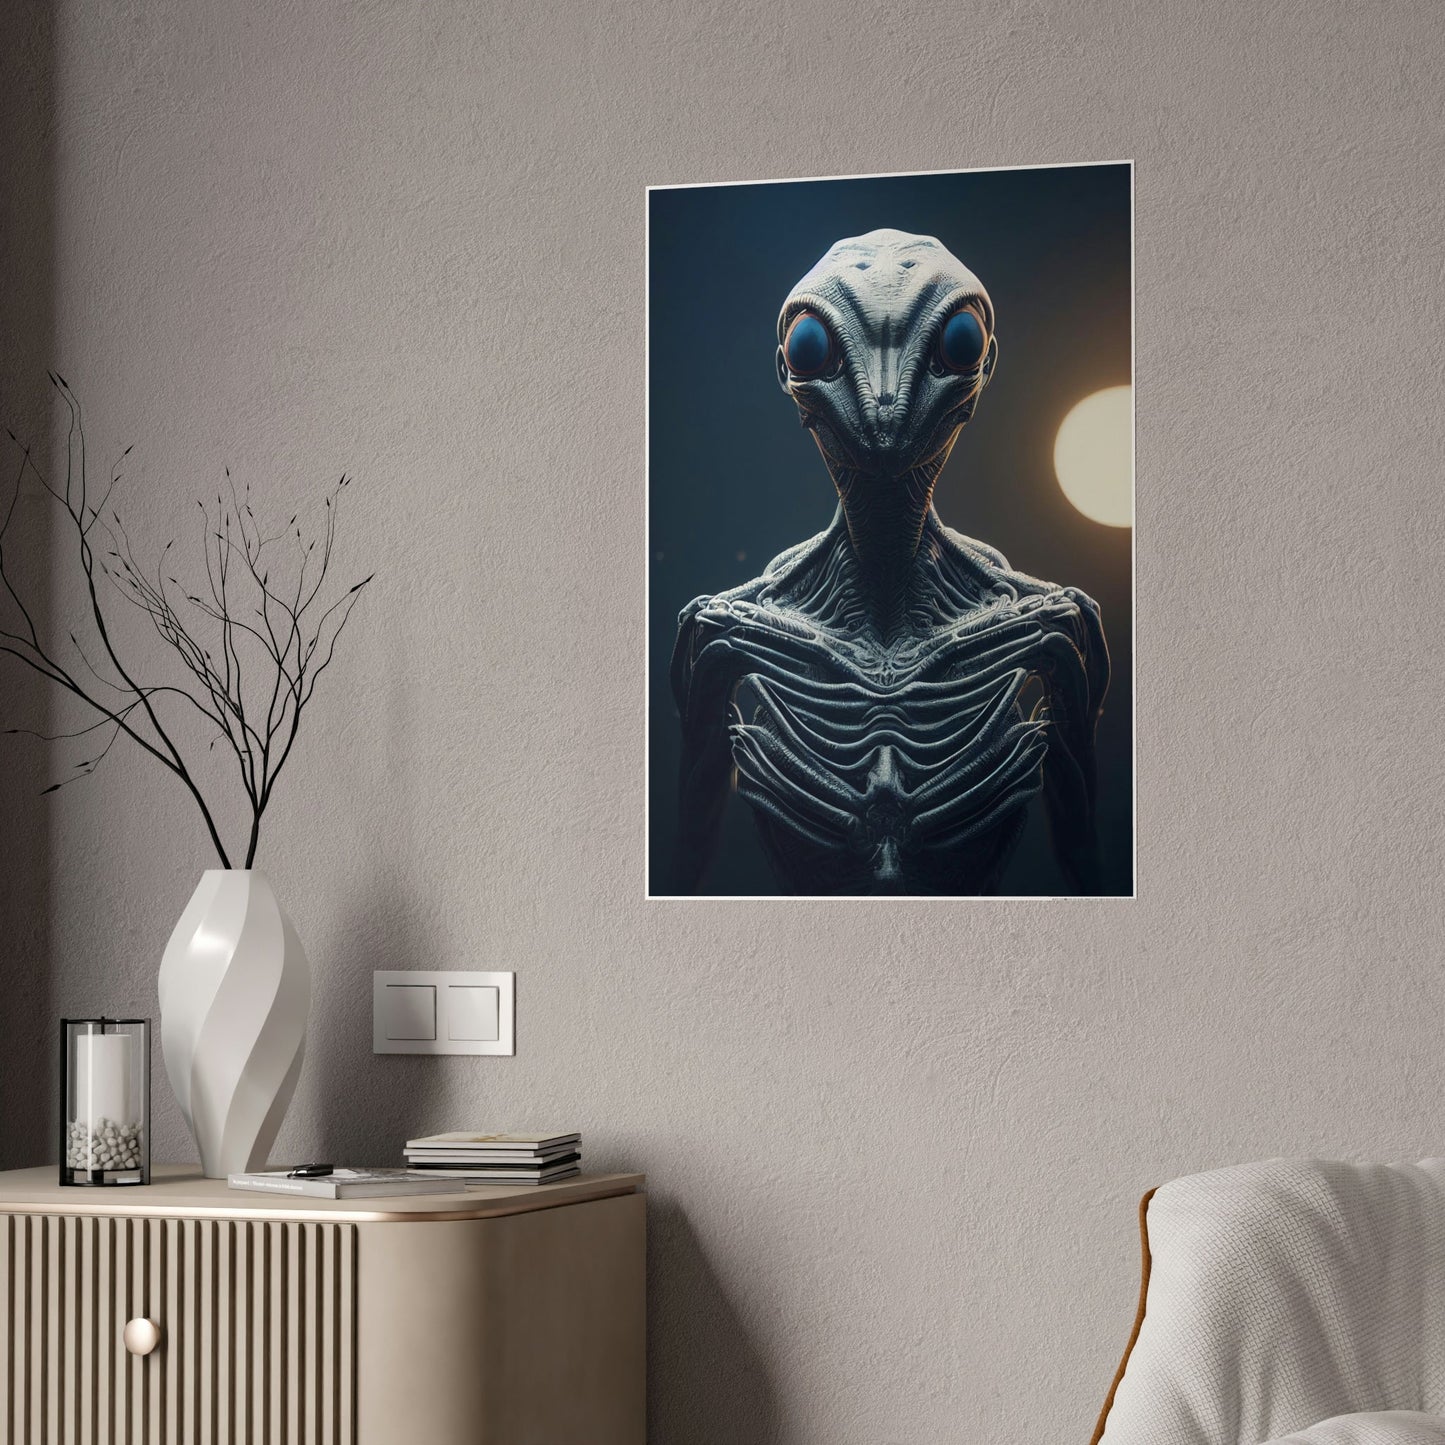 Beyond Our World: Framed Canvas Art Featuring a Mystical Alien